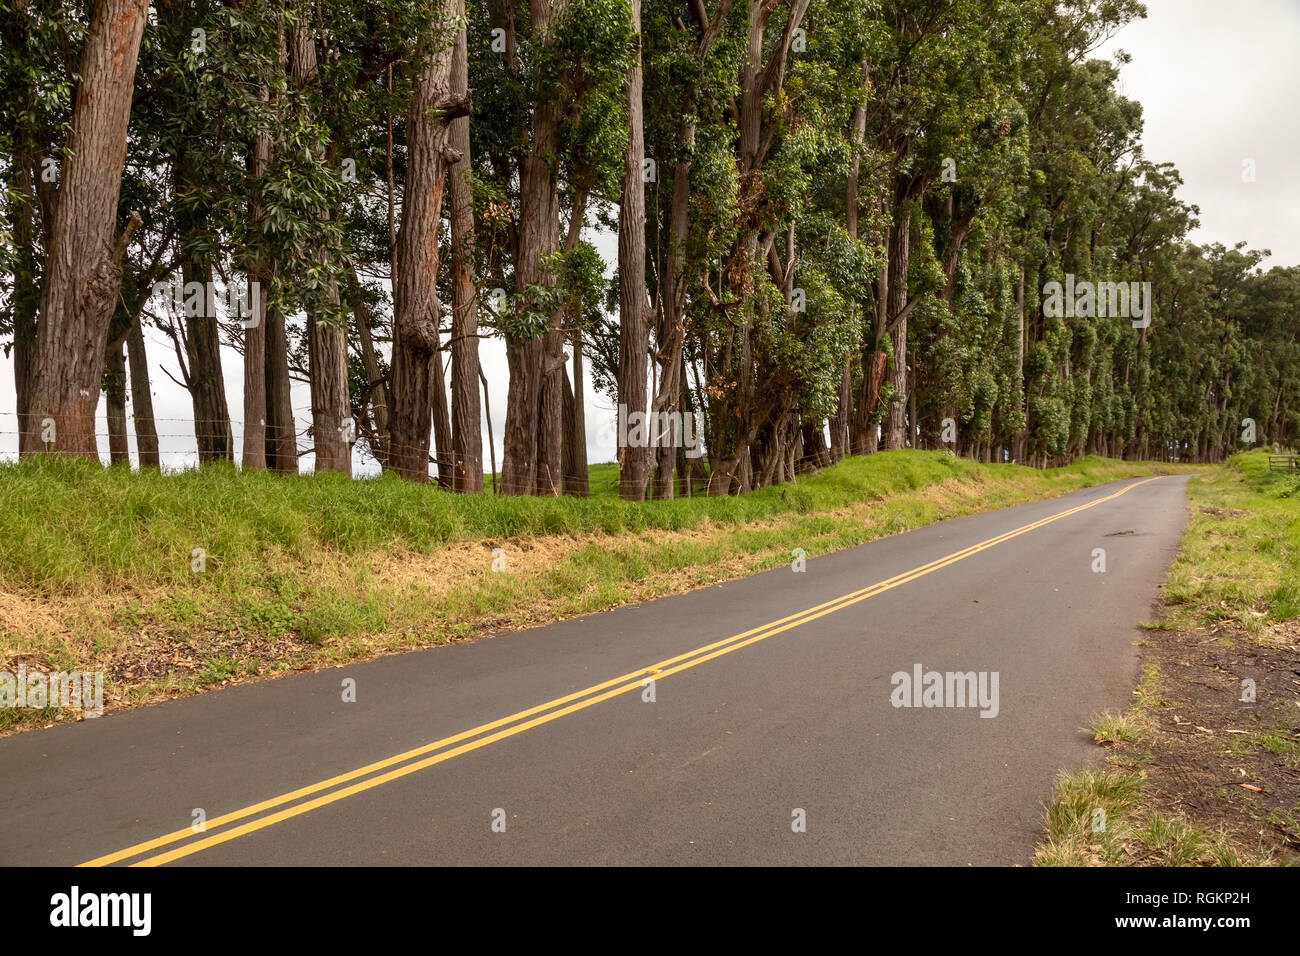 Waimea, Hawaii - The Old Mamalahoa Highway between Honokaa and Waimea. Stock Photo